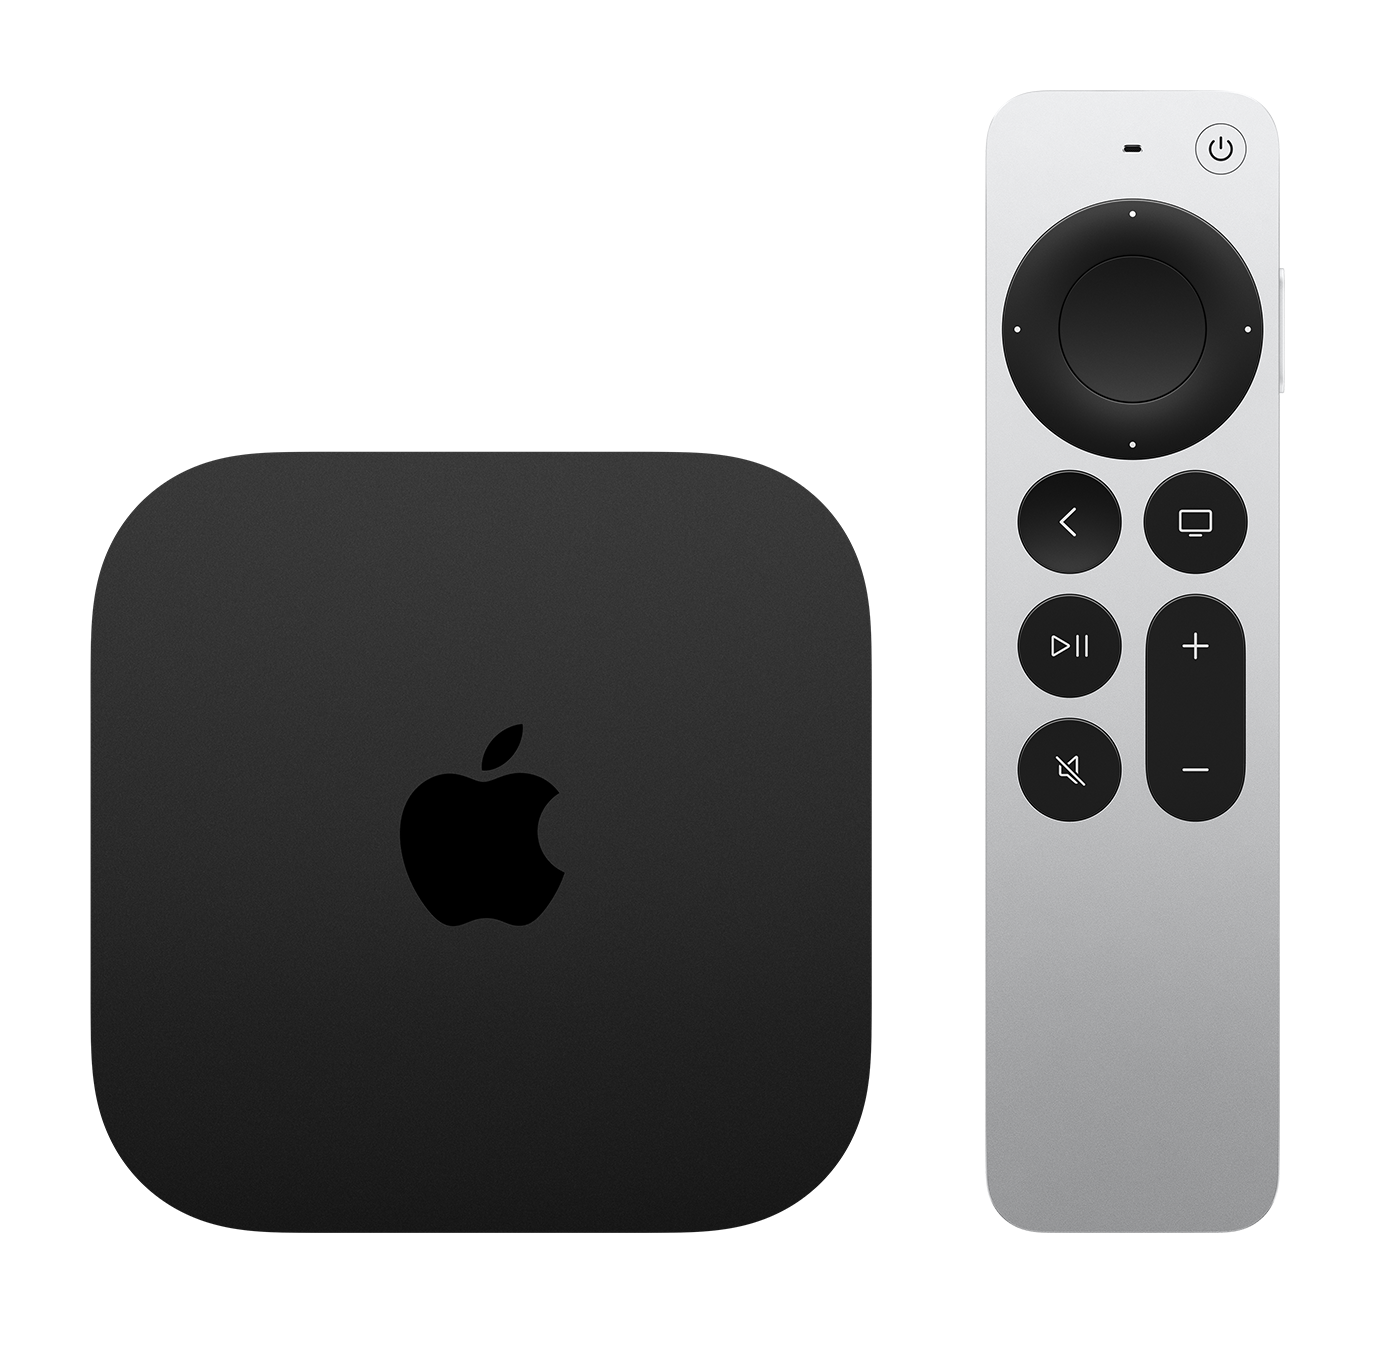 iets Eerder Vleien Apple TV zakelijk kopen - Apple shop Brisk ICT